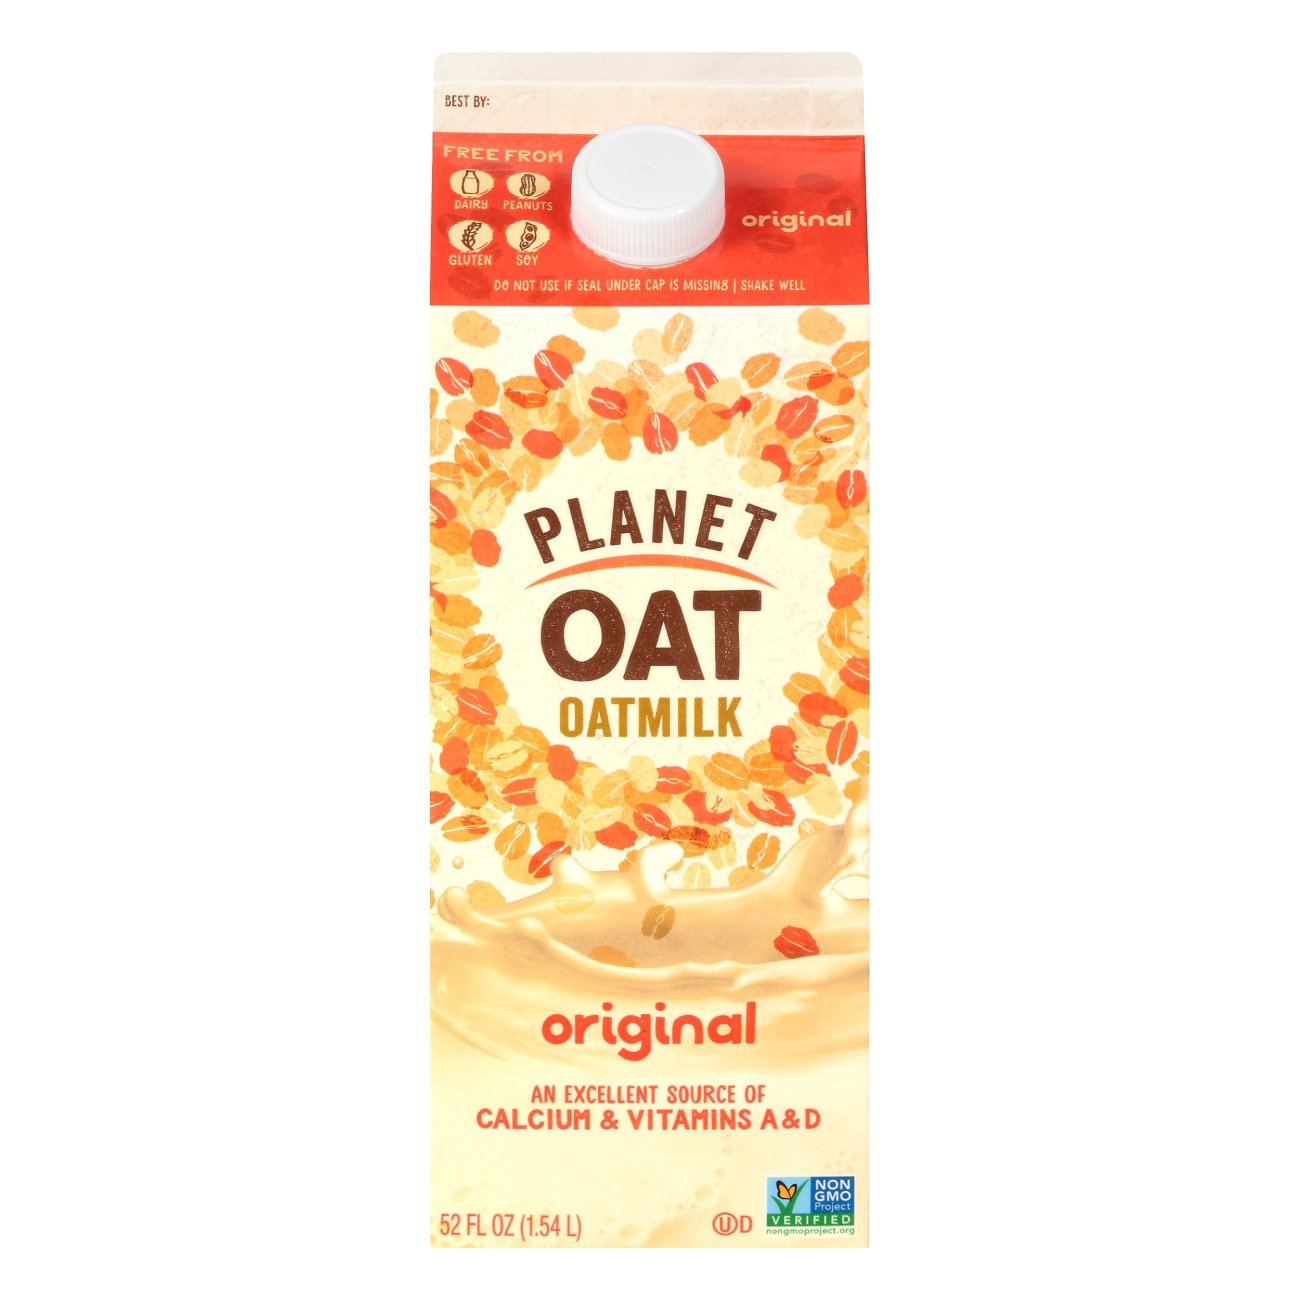 Planet Oat Original Oat Milk - Shop Milk at H-E-B